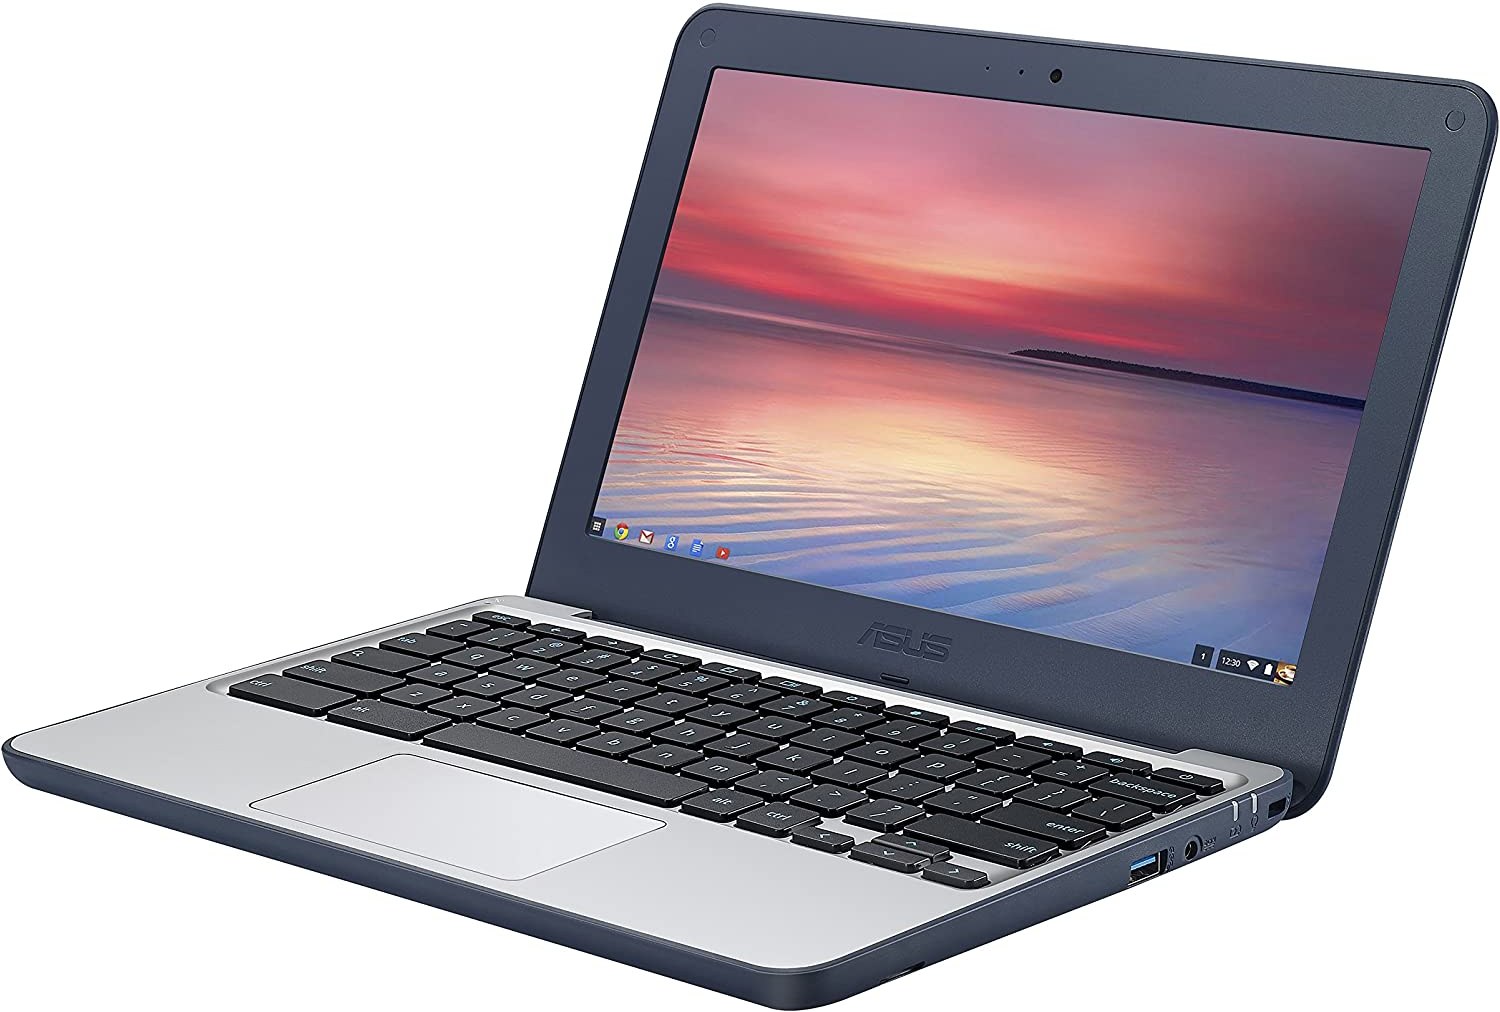 Asus Chromebook c202 laptop